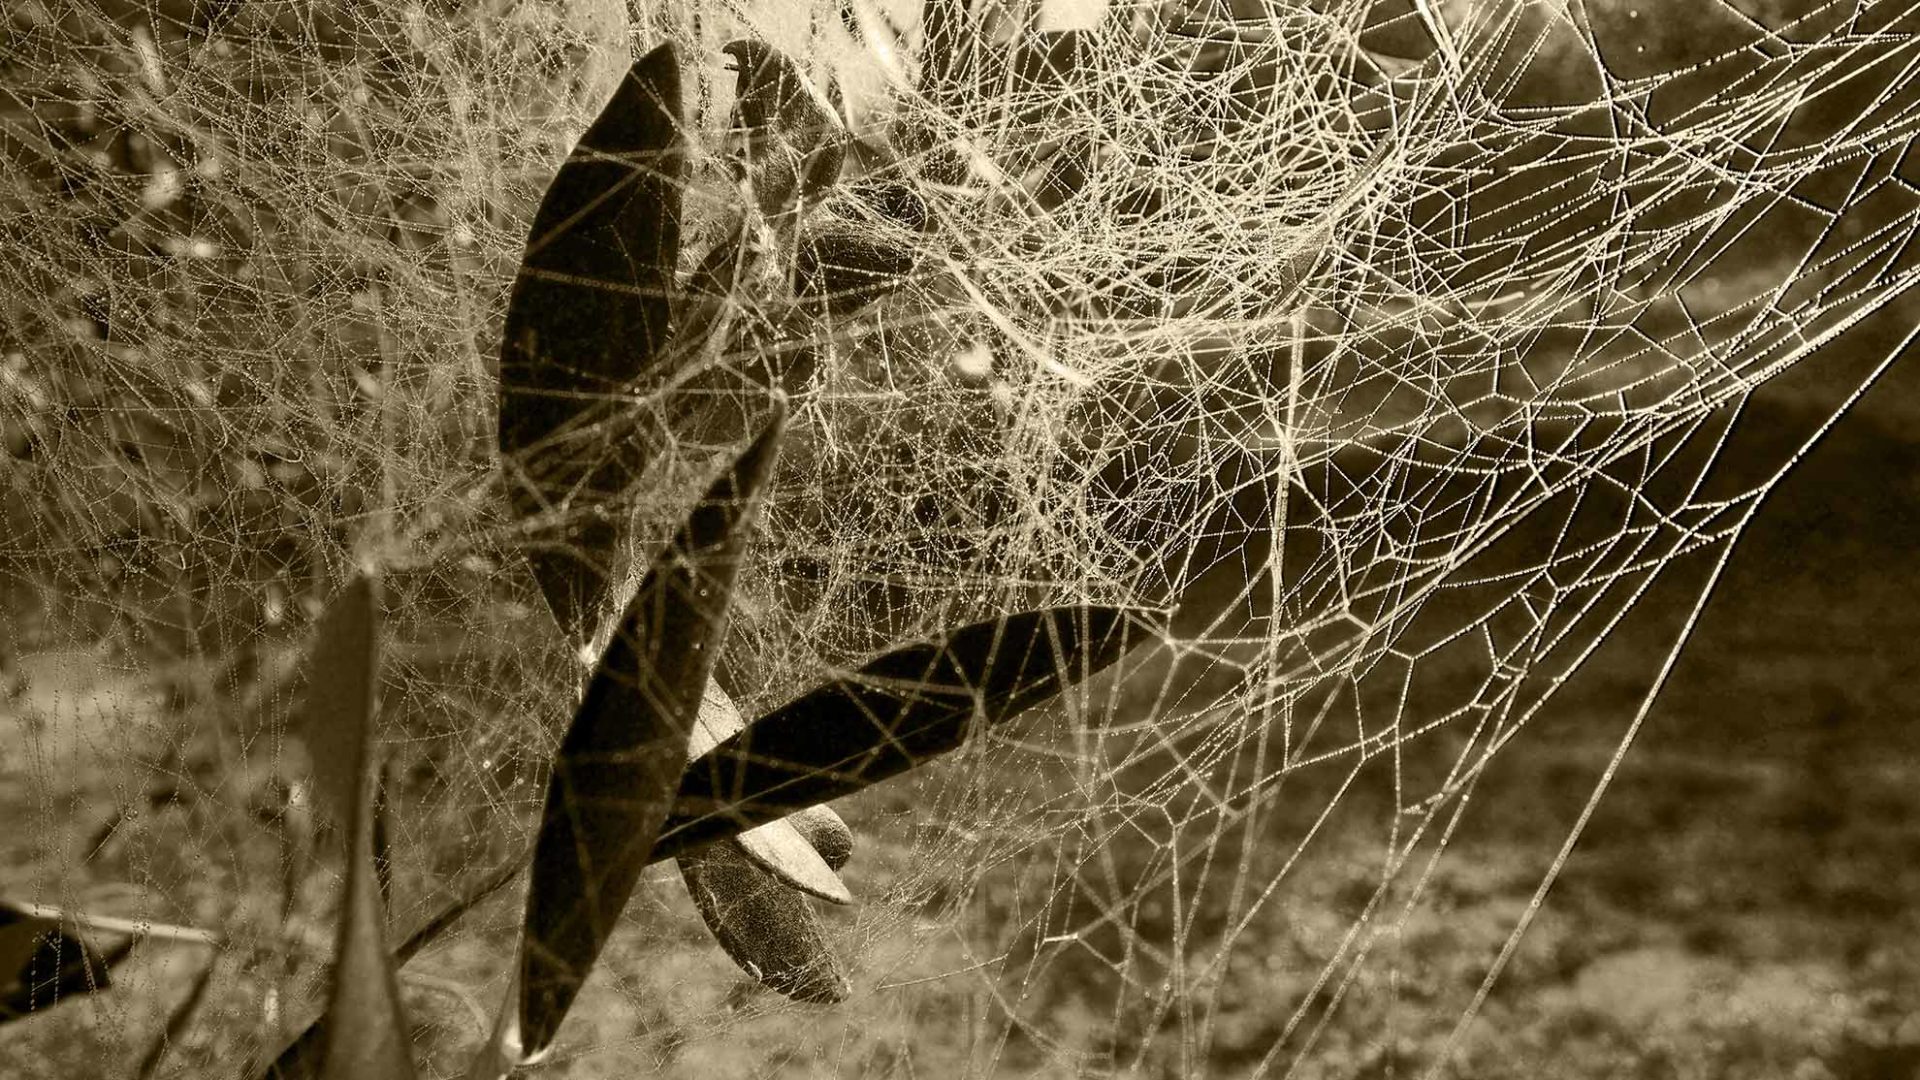 La rugiada bagna la tela del ragno tra le foglie d'olivo